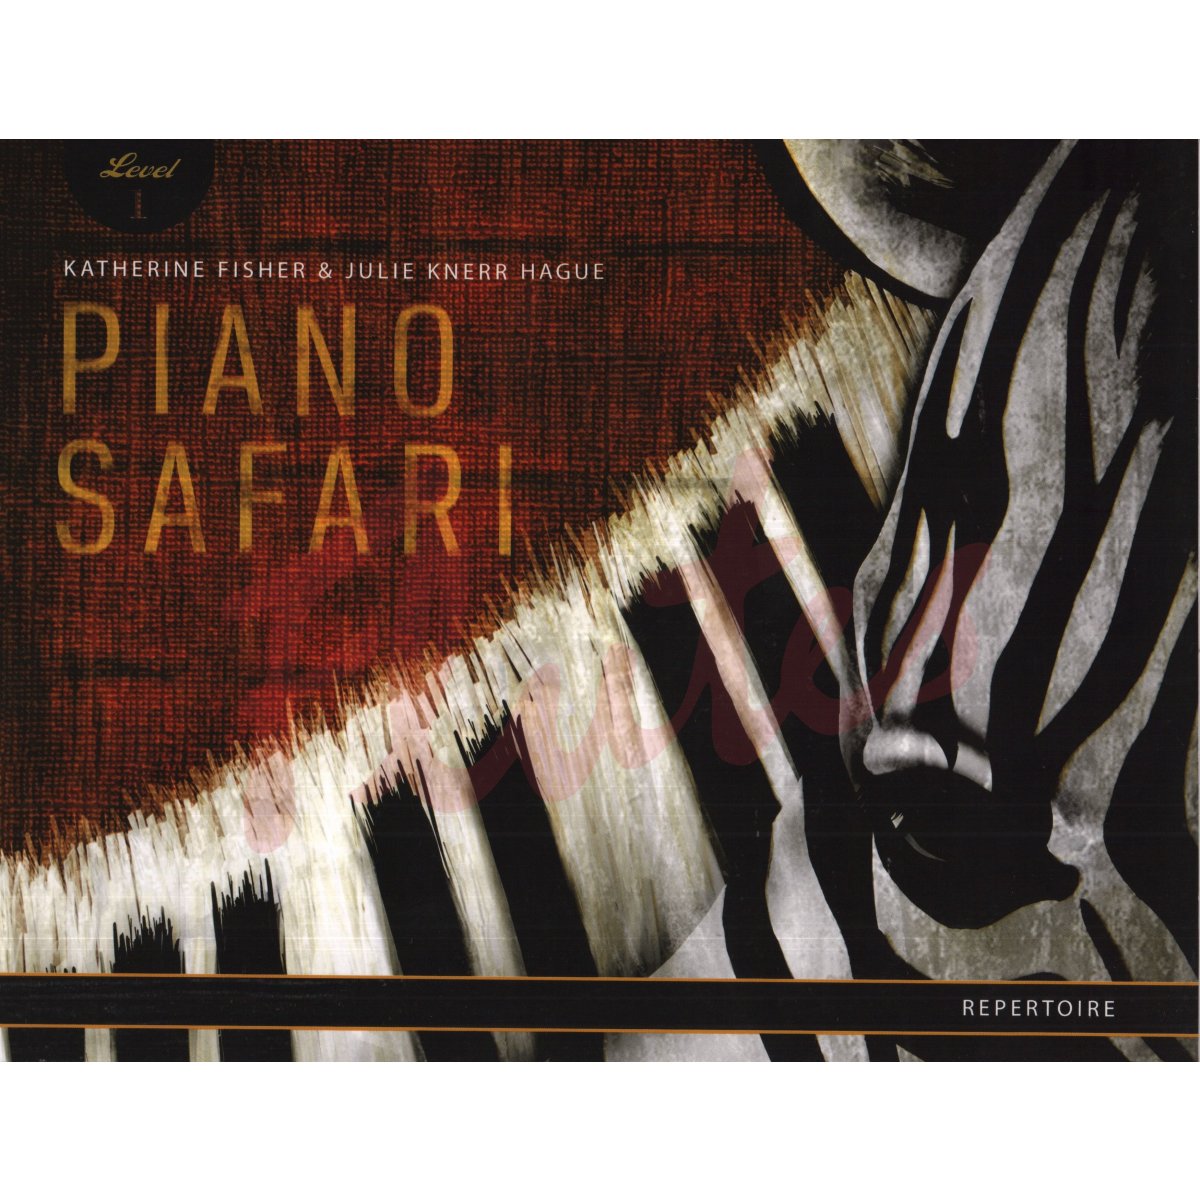 piano safari level 1 repertoire